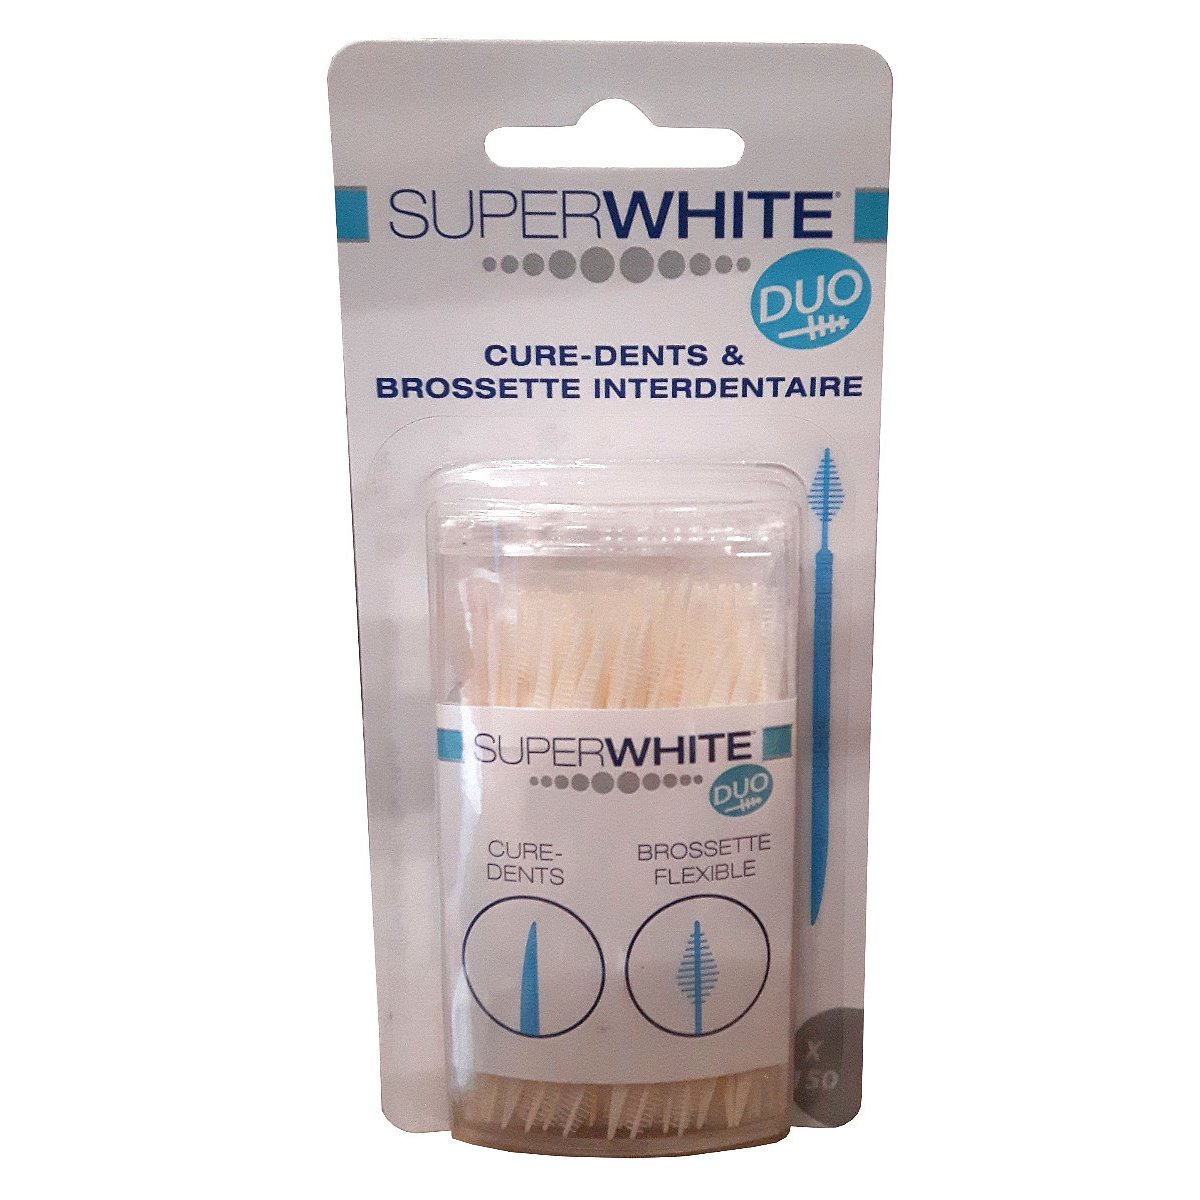 Superwhite Interdental Cure Dents DUO zubní párátka 150 ks